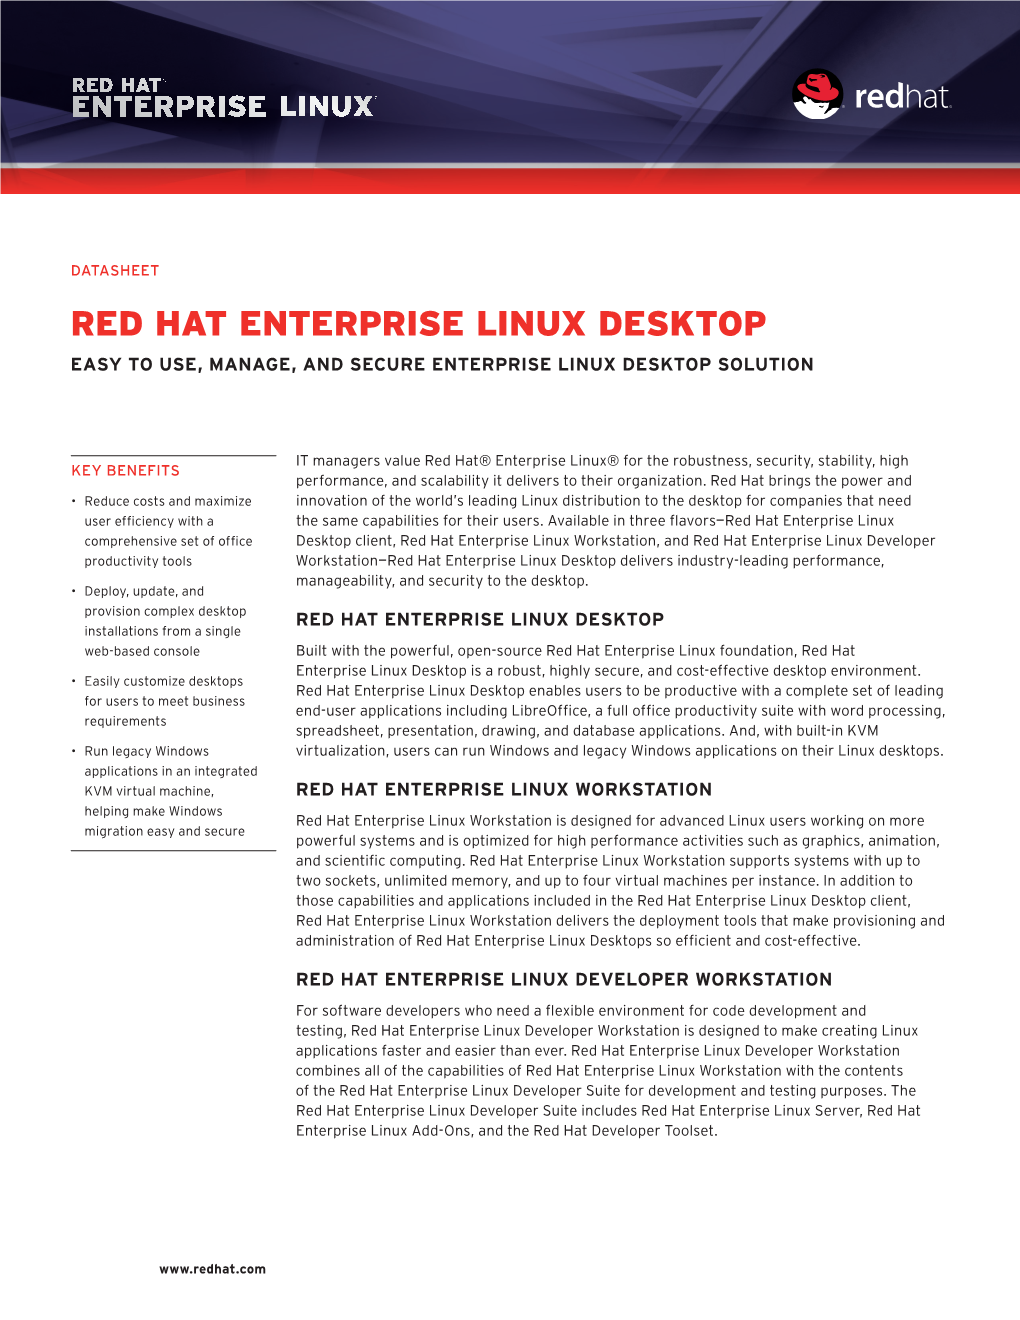 Red Hat Enterprise Linux Desktop Easy to Use, Manage, and Secure Enterprise Linux Desktop Solution